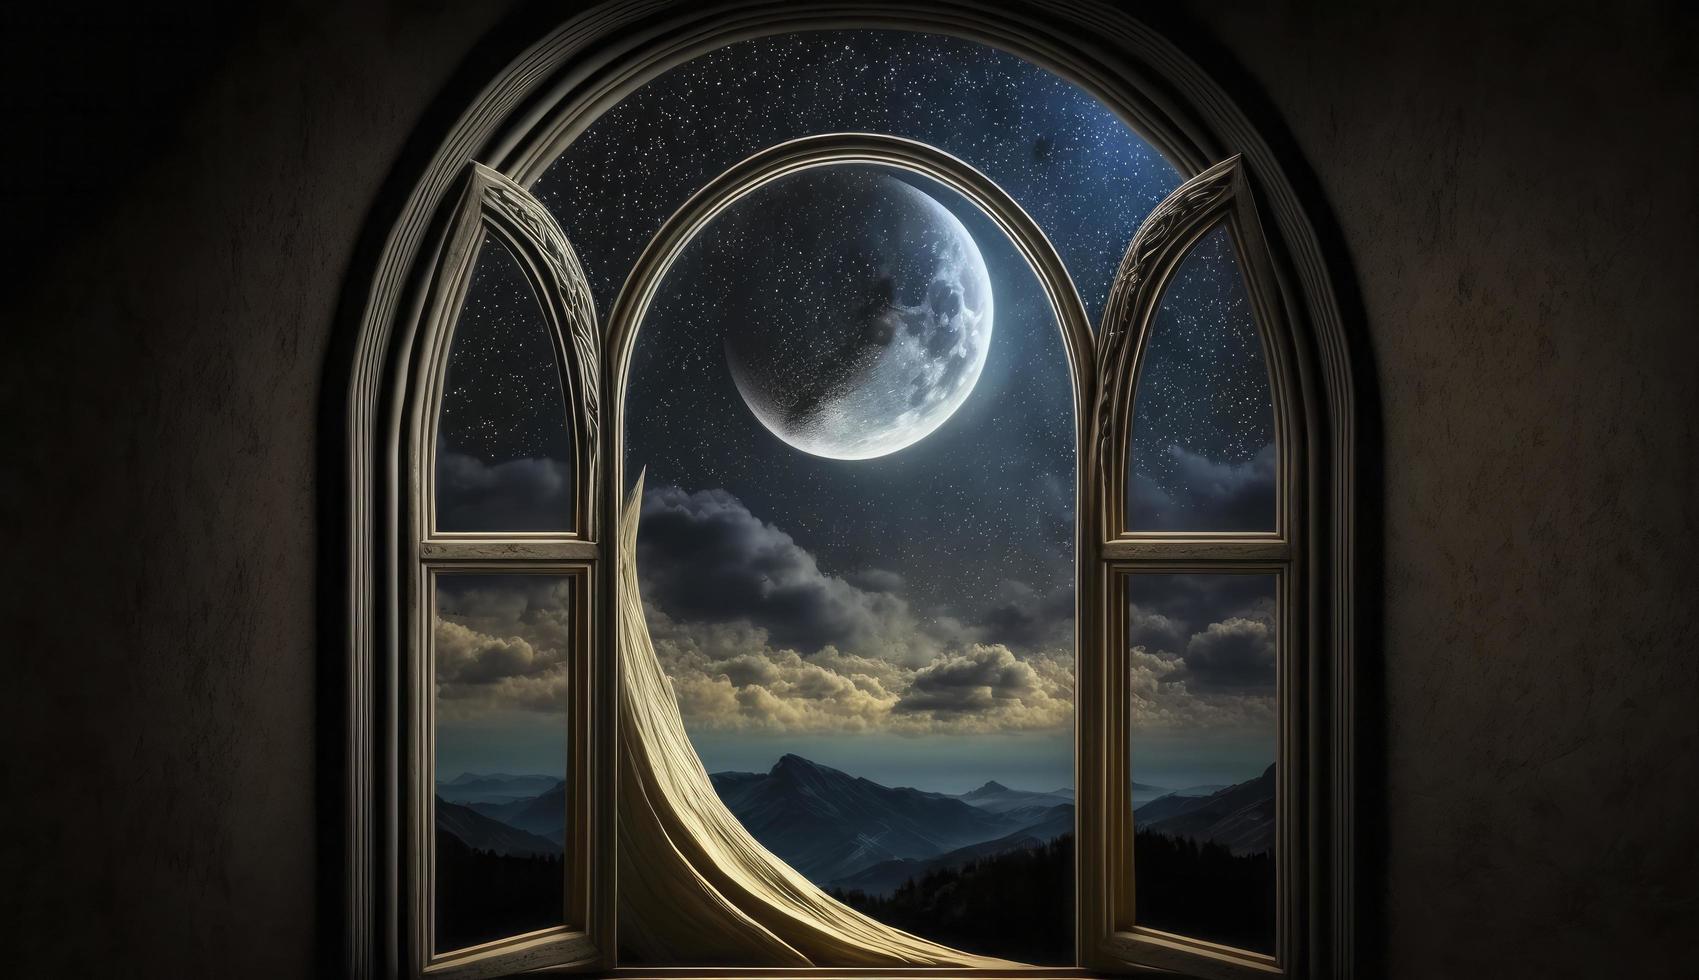 mistico finestra con mezzaluna Luna nel notte cielo, islamico saluto eid mubarak per musulmano vacanze. Eid-ul-Adha Festival celebrazione. Arabo Ramadan kareem, creare ai foto